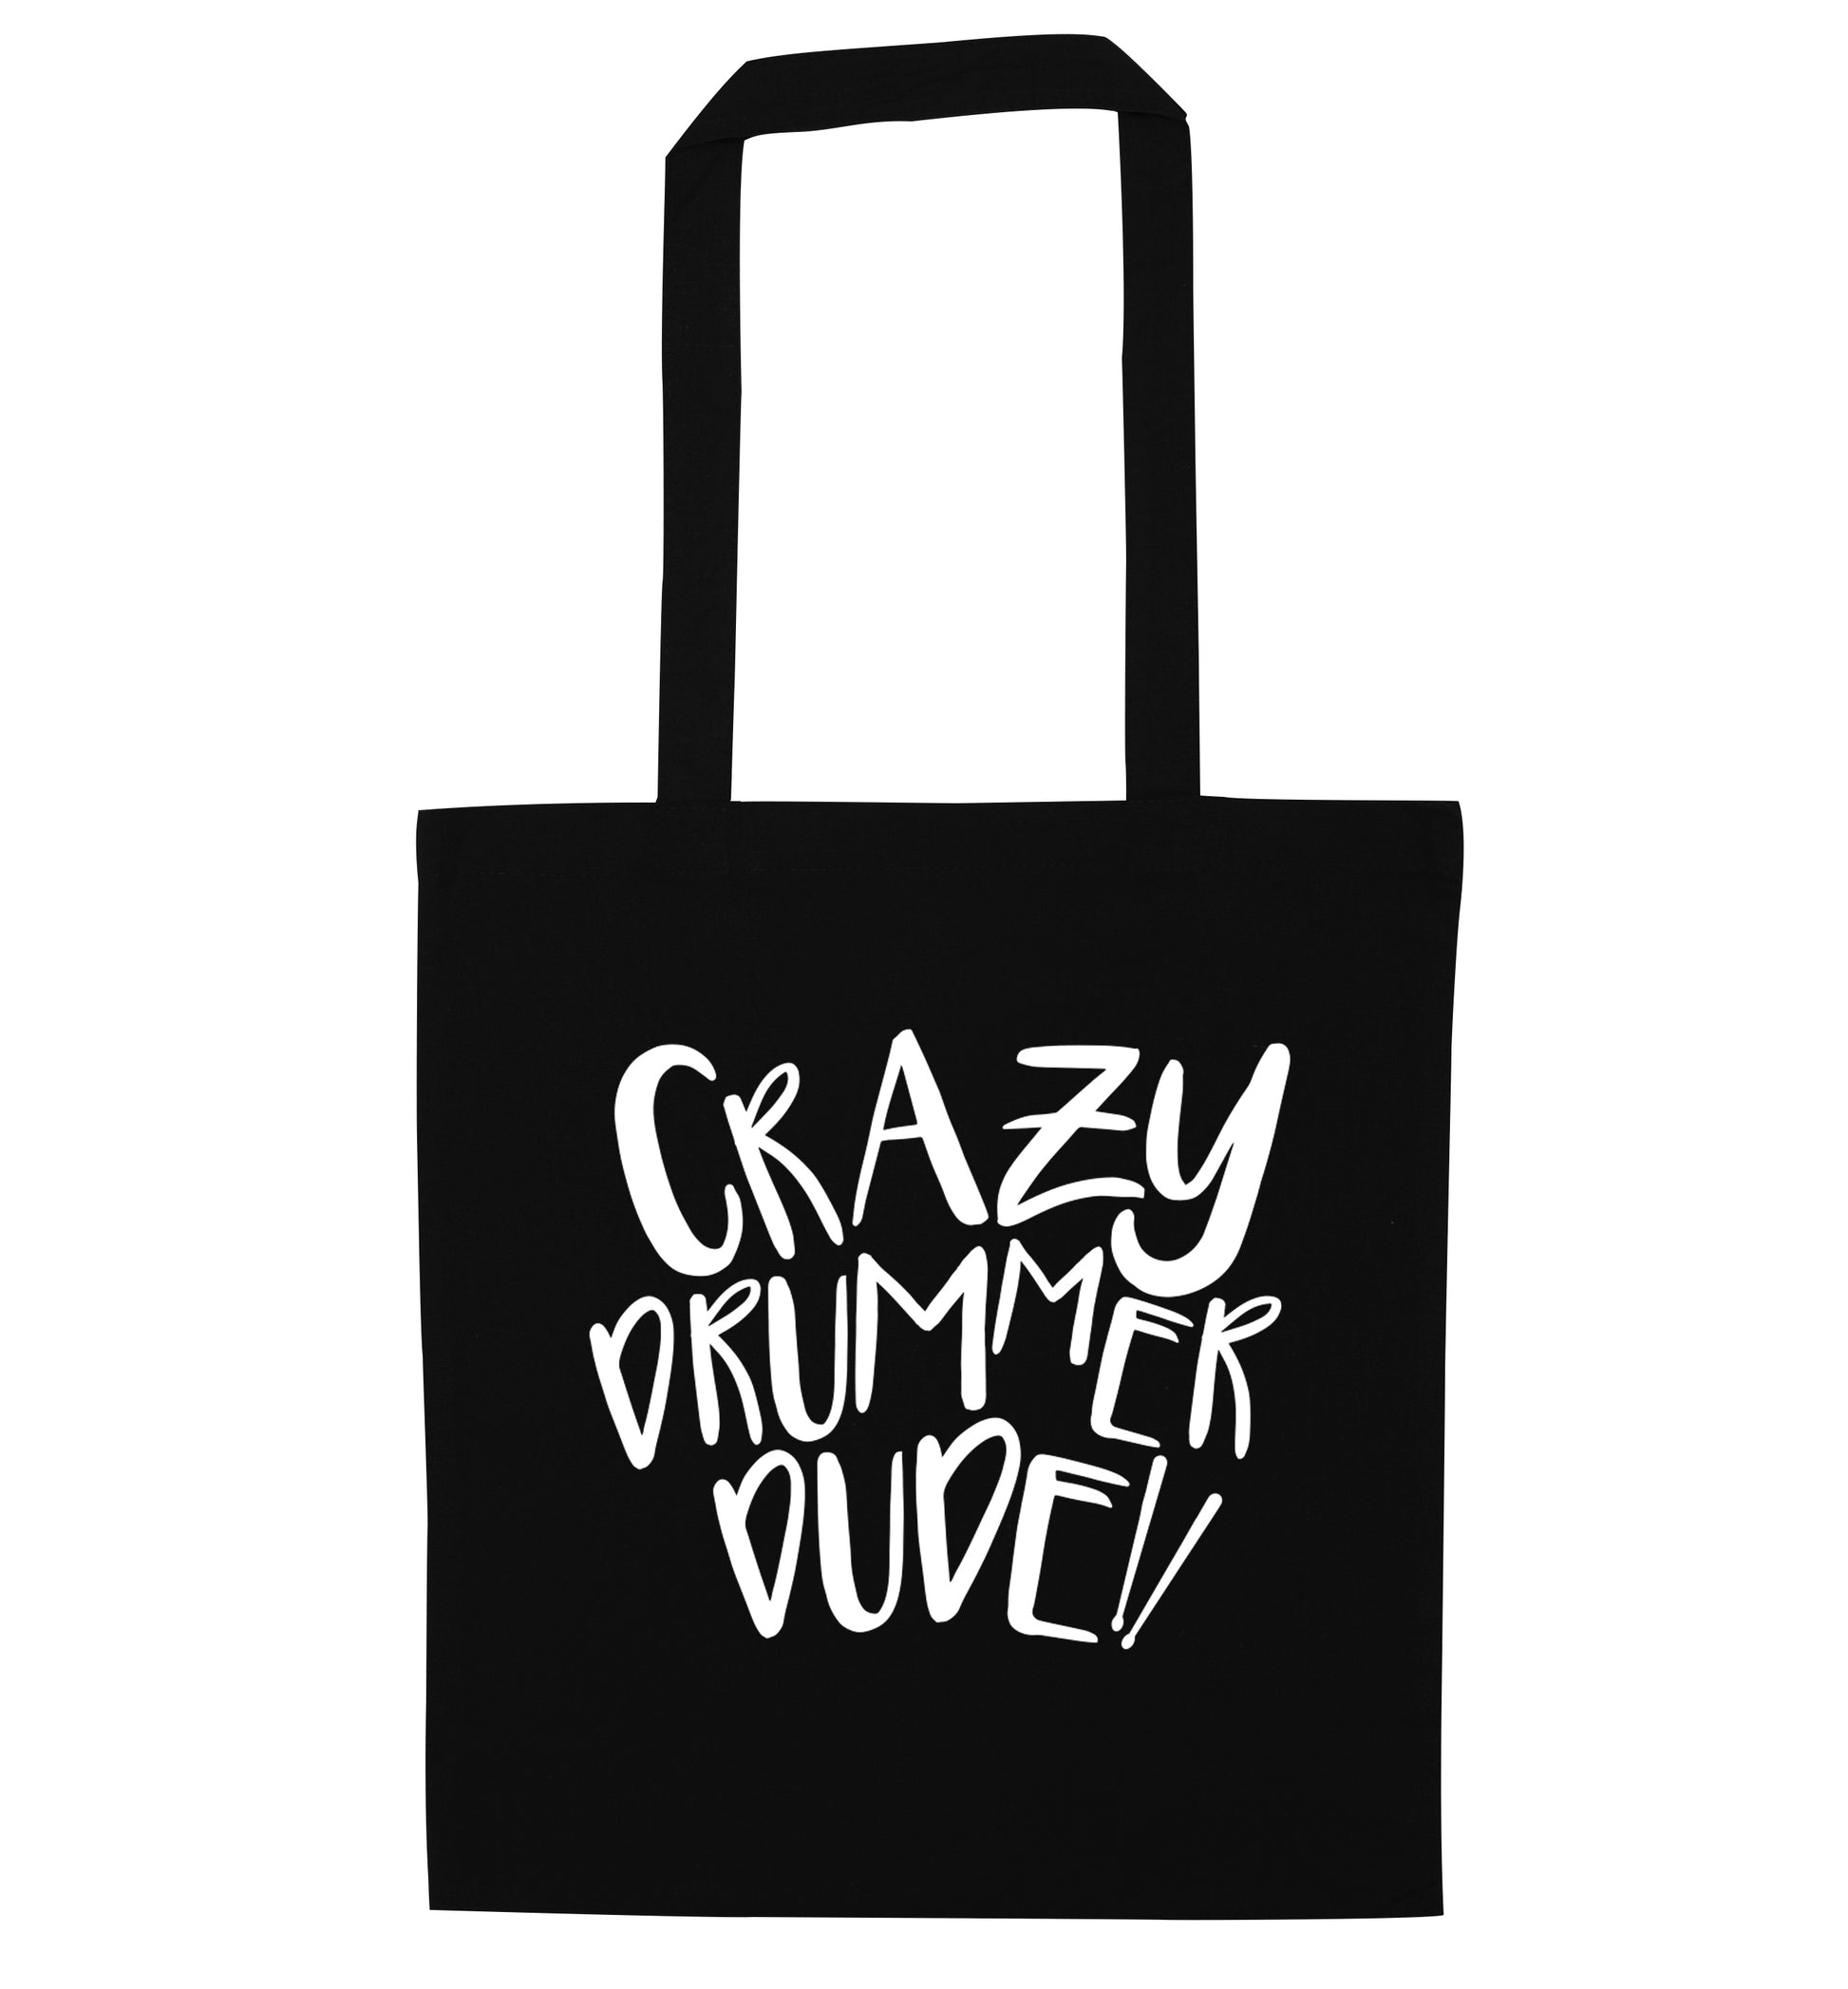 Crazy drummer dude black tote bag